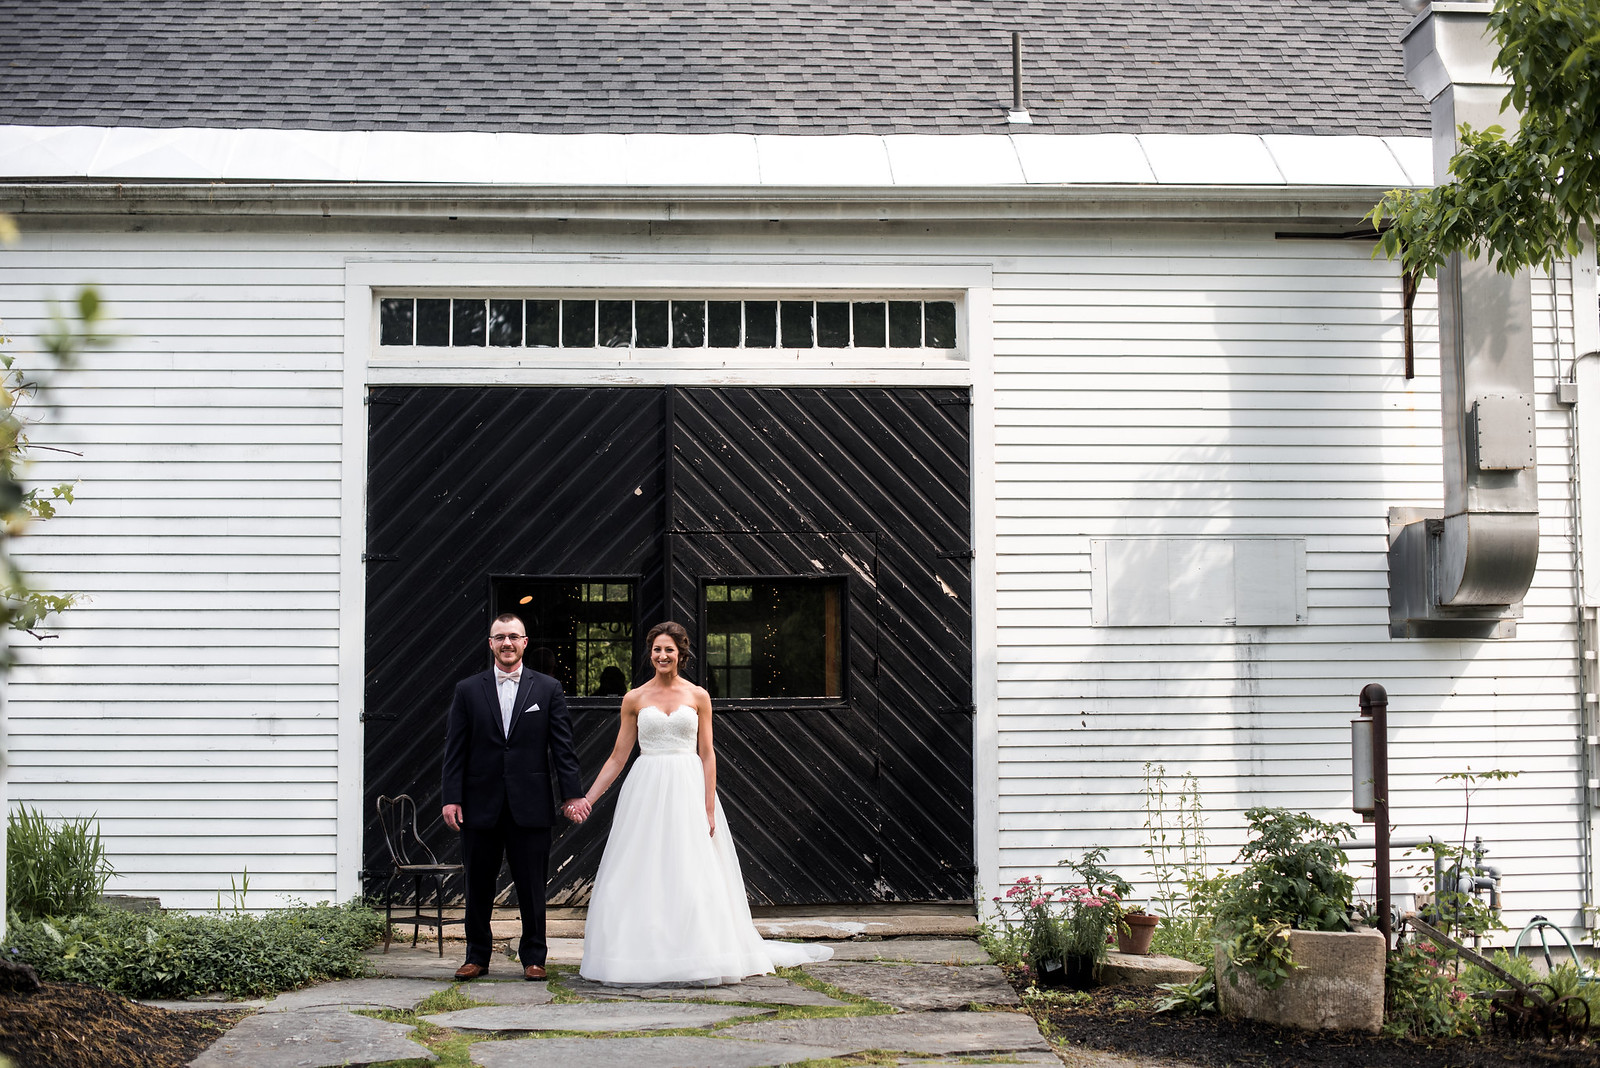 New England Wedding Barn on juliettelauraphotography.blogspot.com